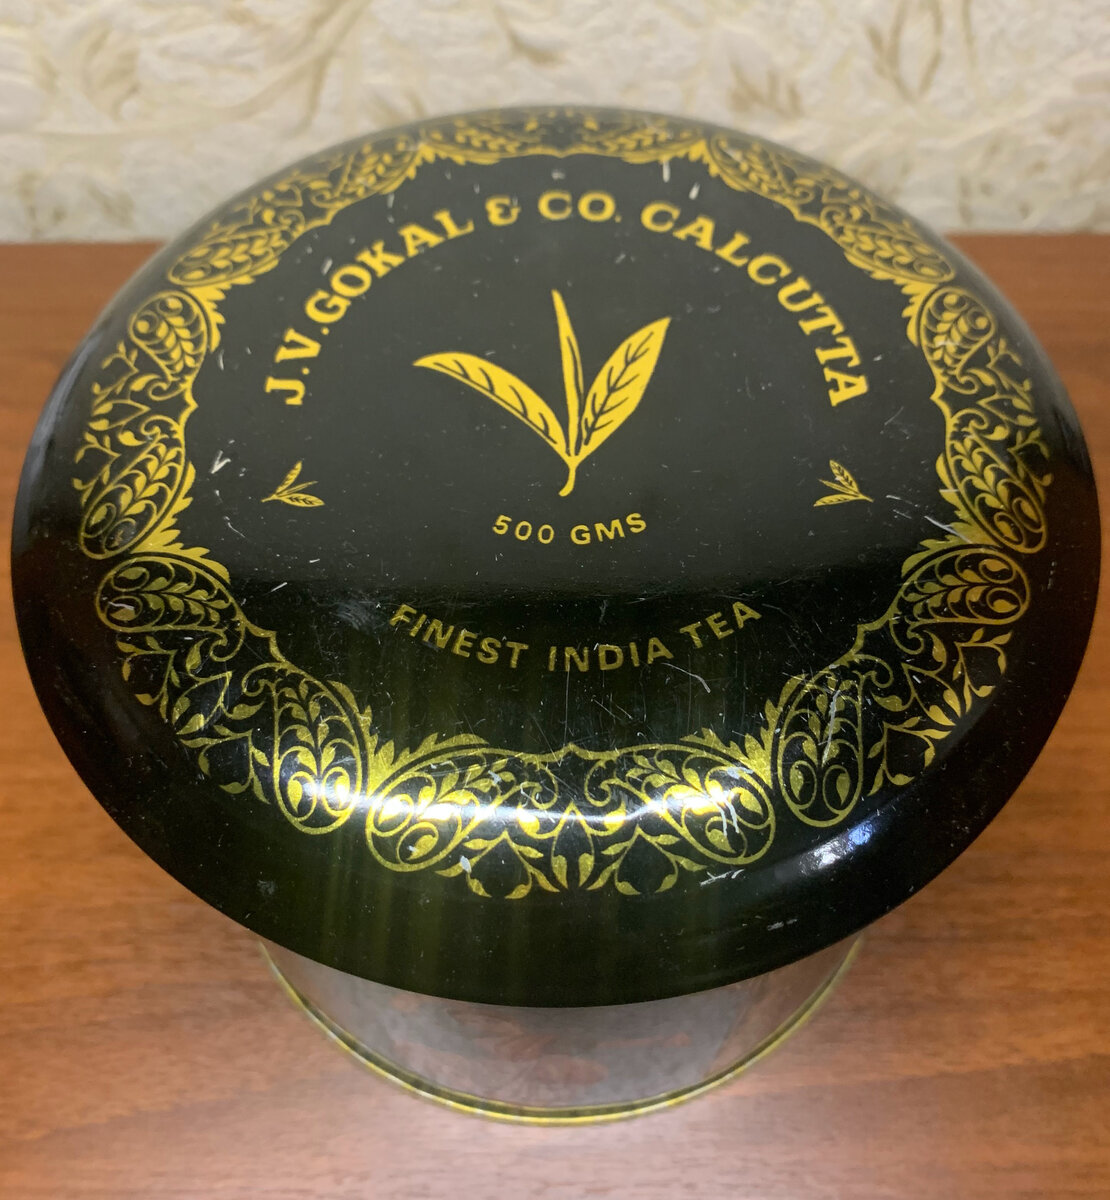 Черный чай высшего качества из купажа индийских чаев и чая Дарджилинг.
Выпущен компанией J.V.Gokal & Company, 14/1B, Erza Street, Calcutta-700001, India. Лицензия № L4-60/PT/53.-1-2